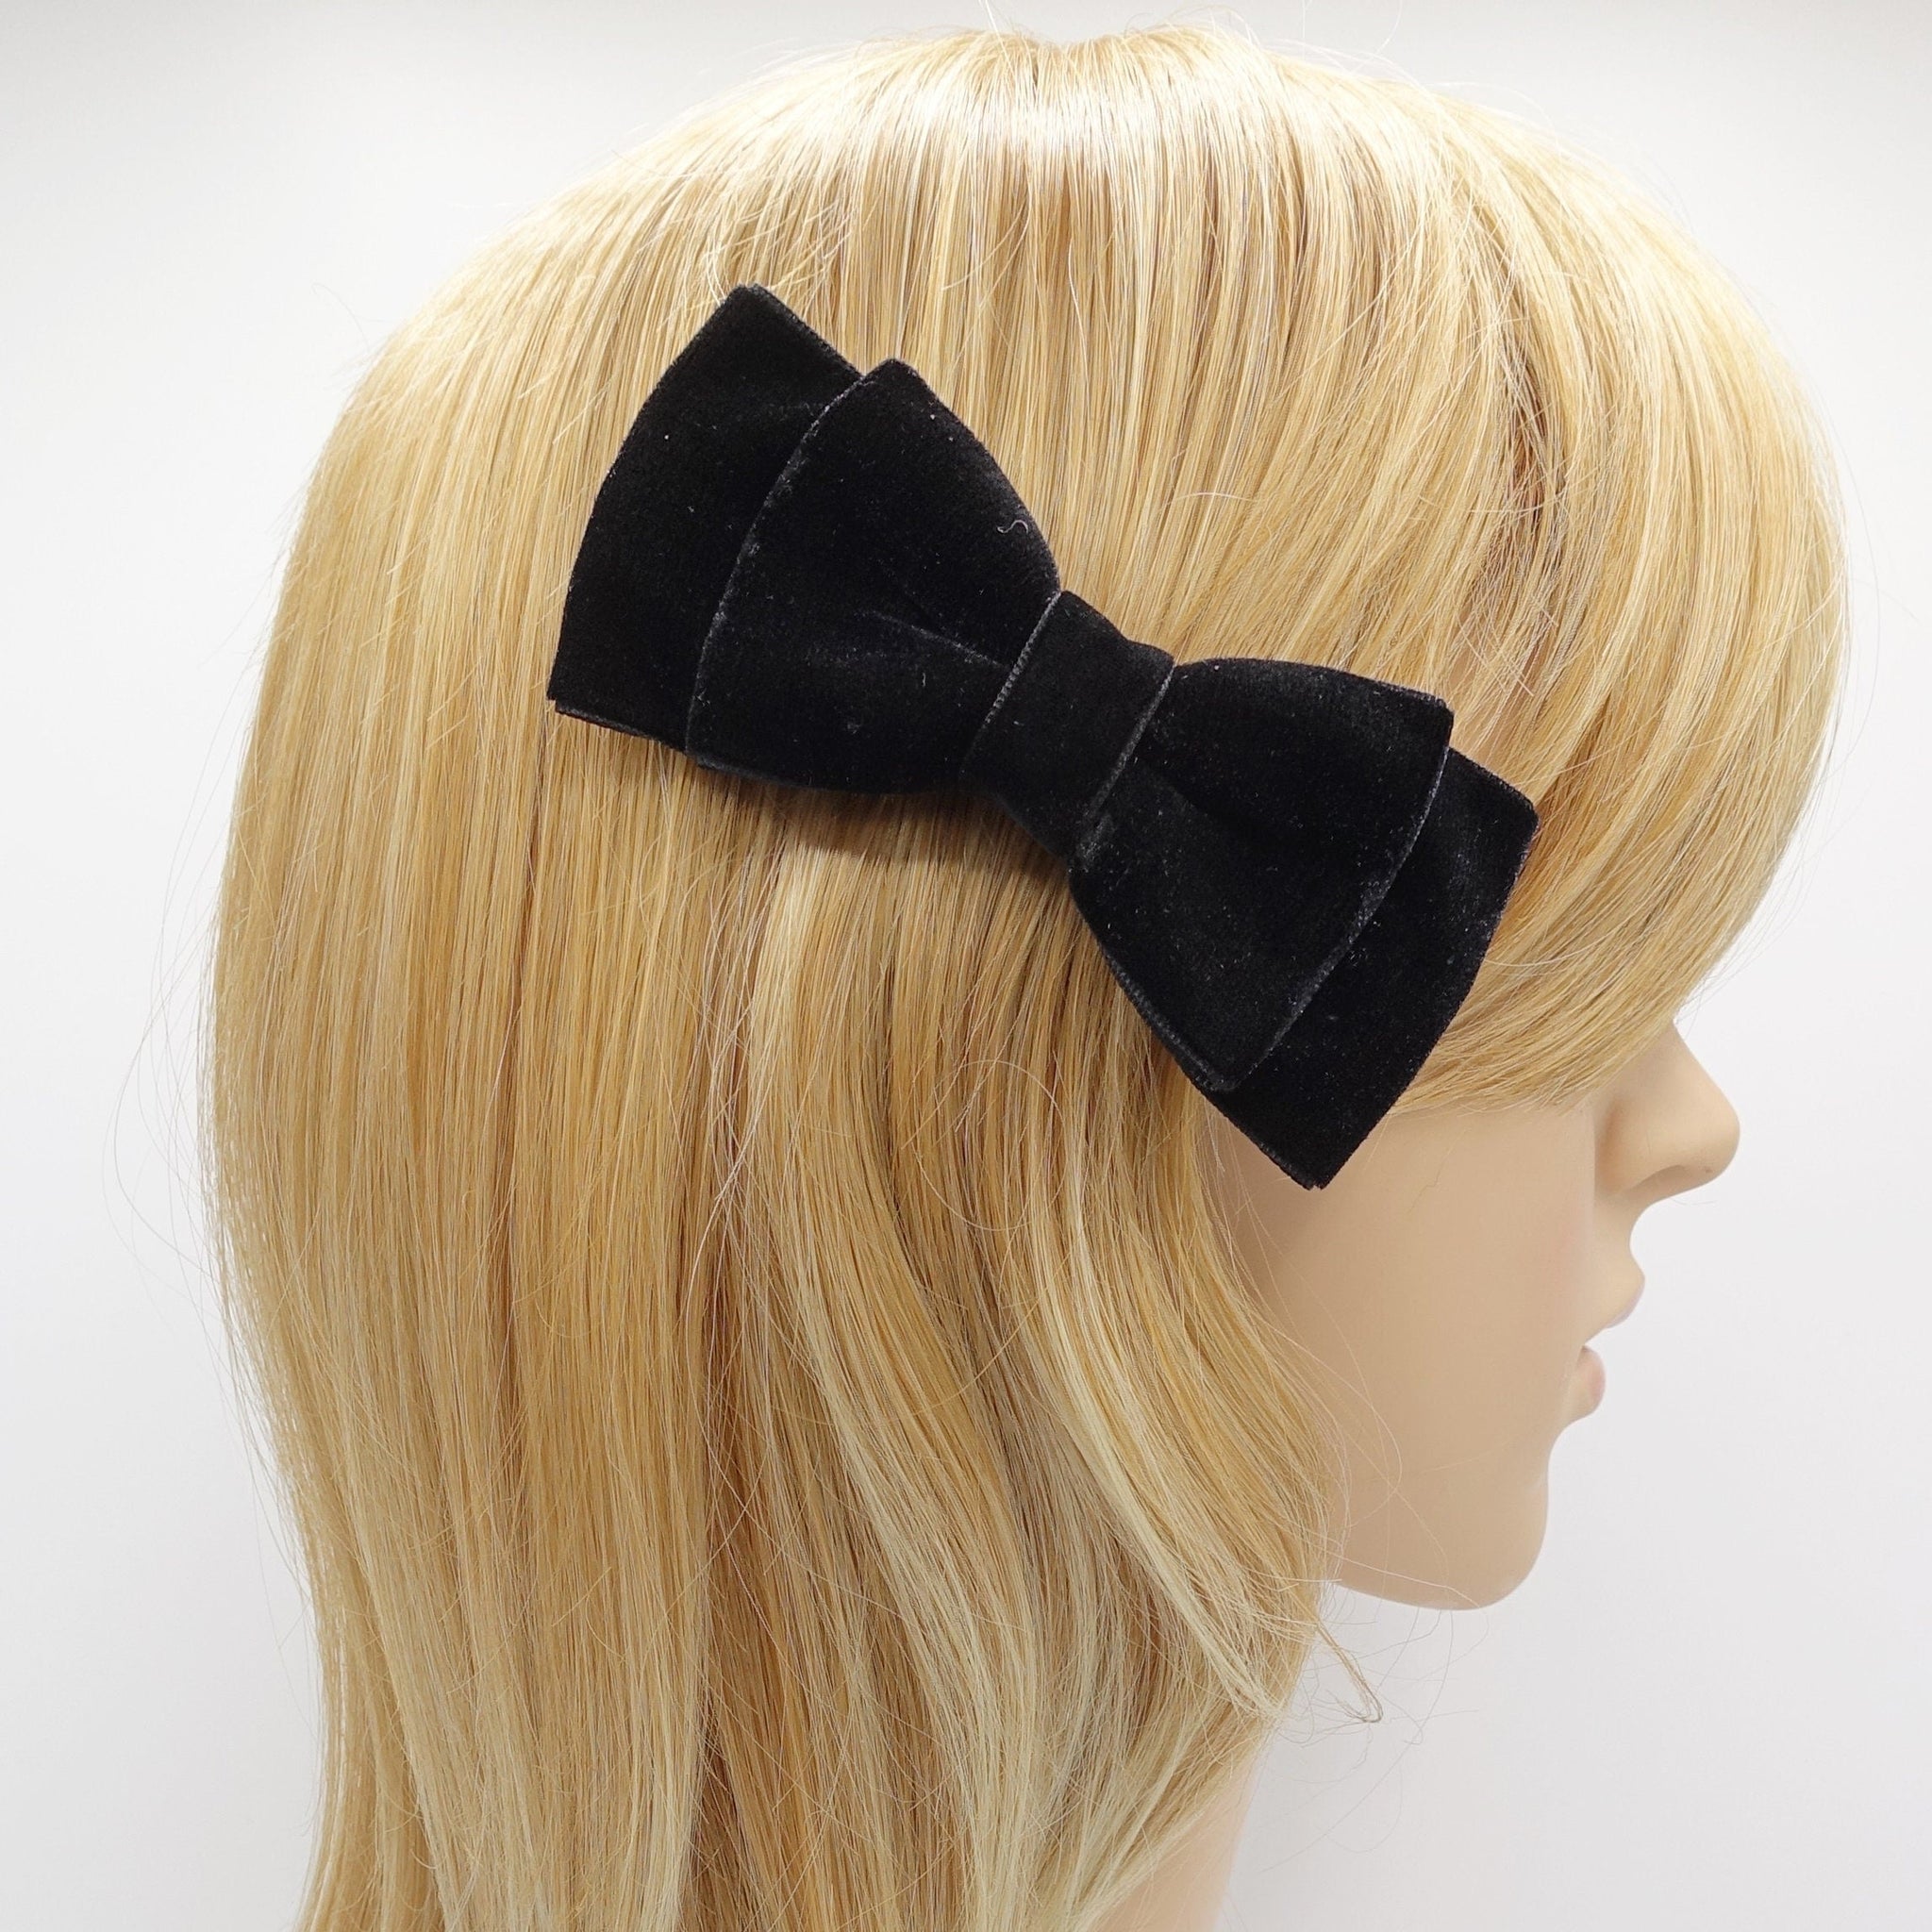 veryshine.com Barrette (Bow) bow clip Black velvet hair bow, Naomi hair bow, practical hair bow, must-have hair bow for women